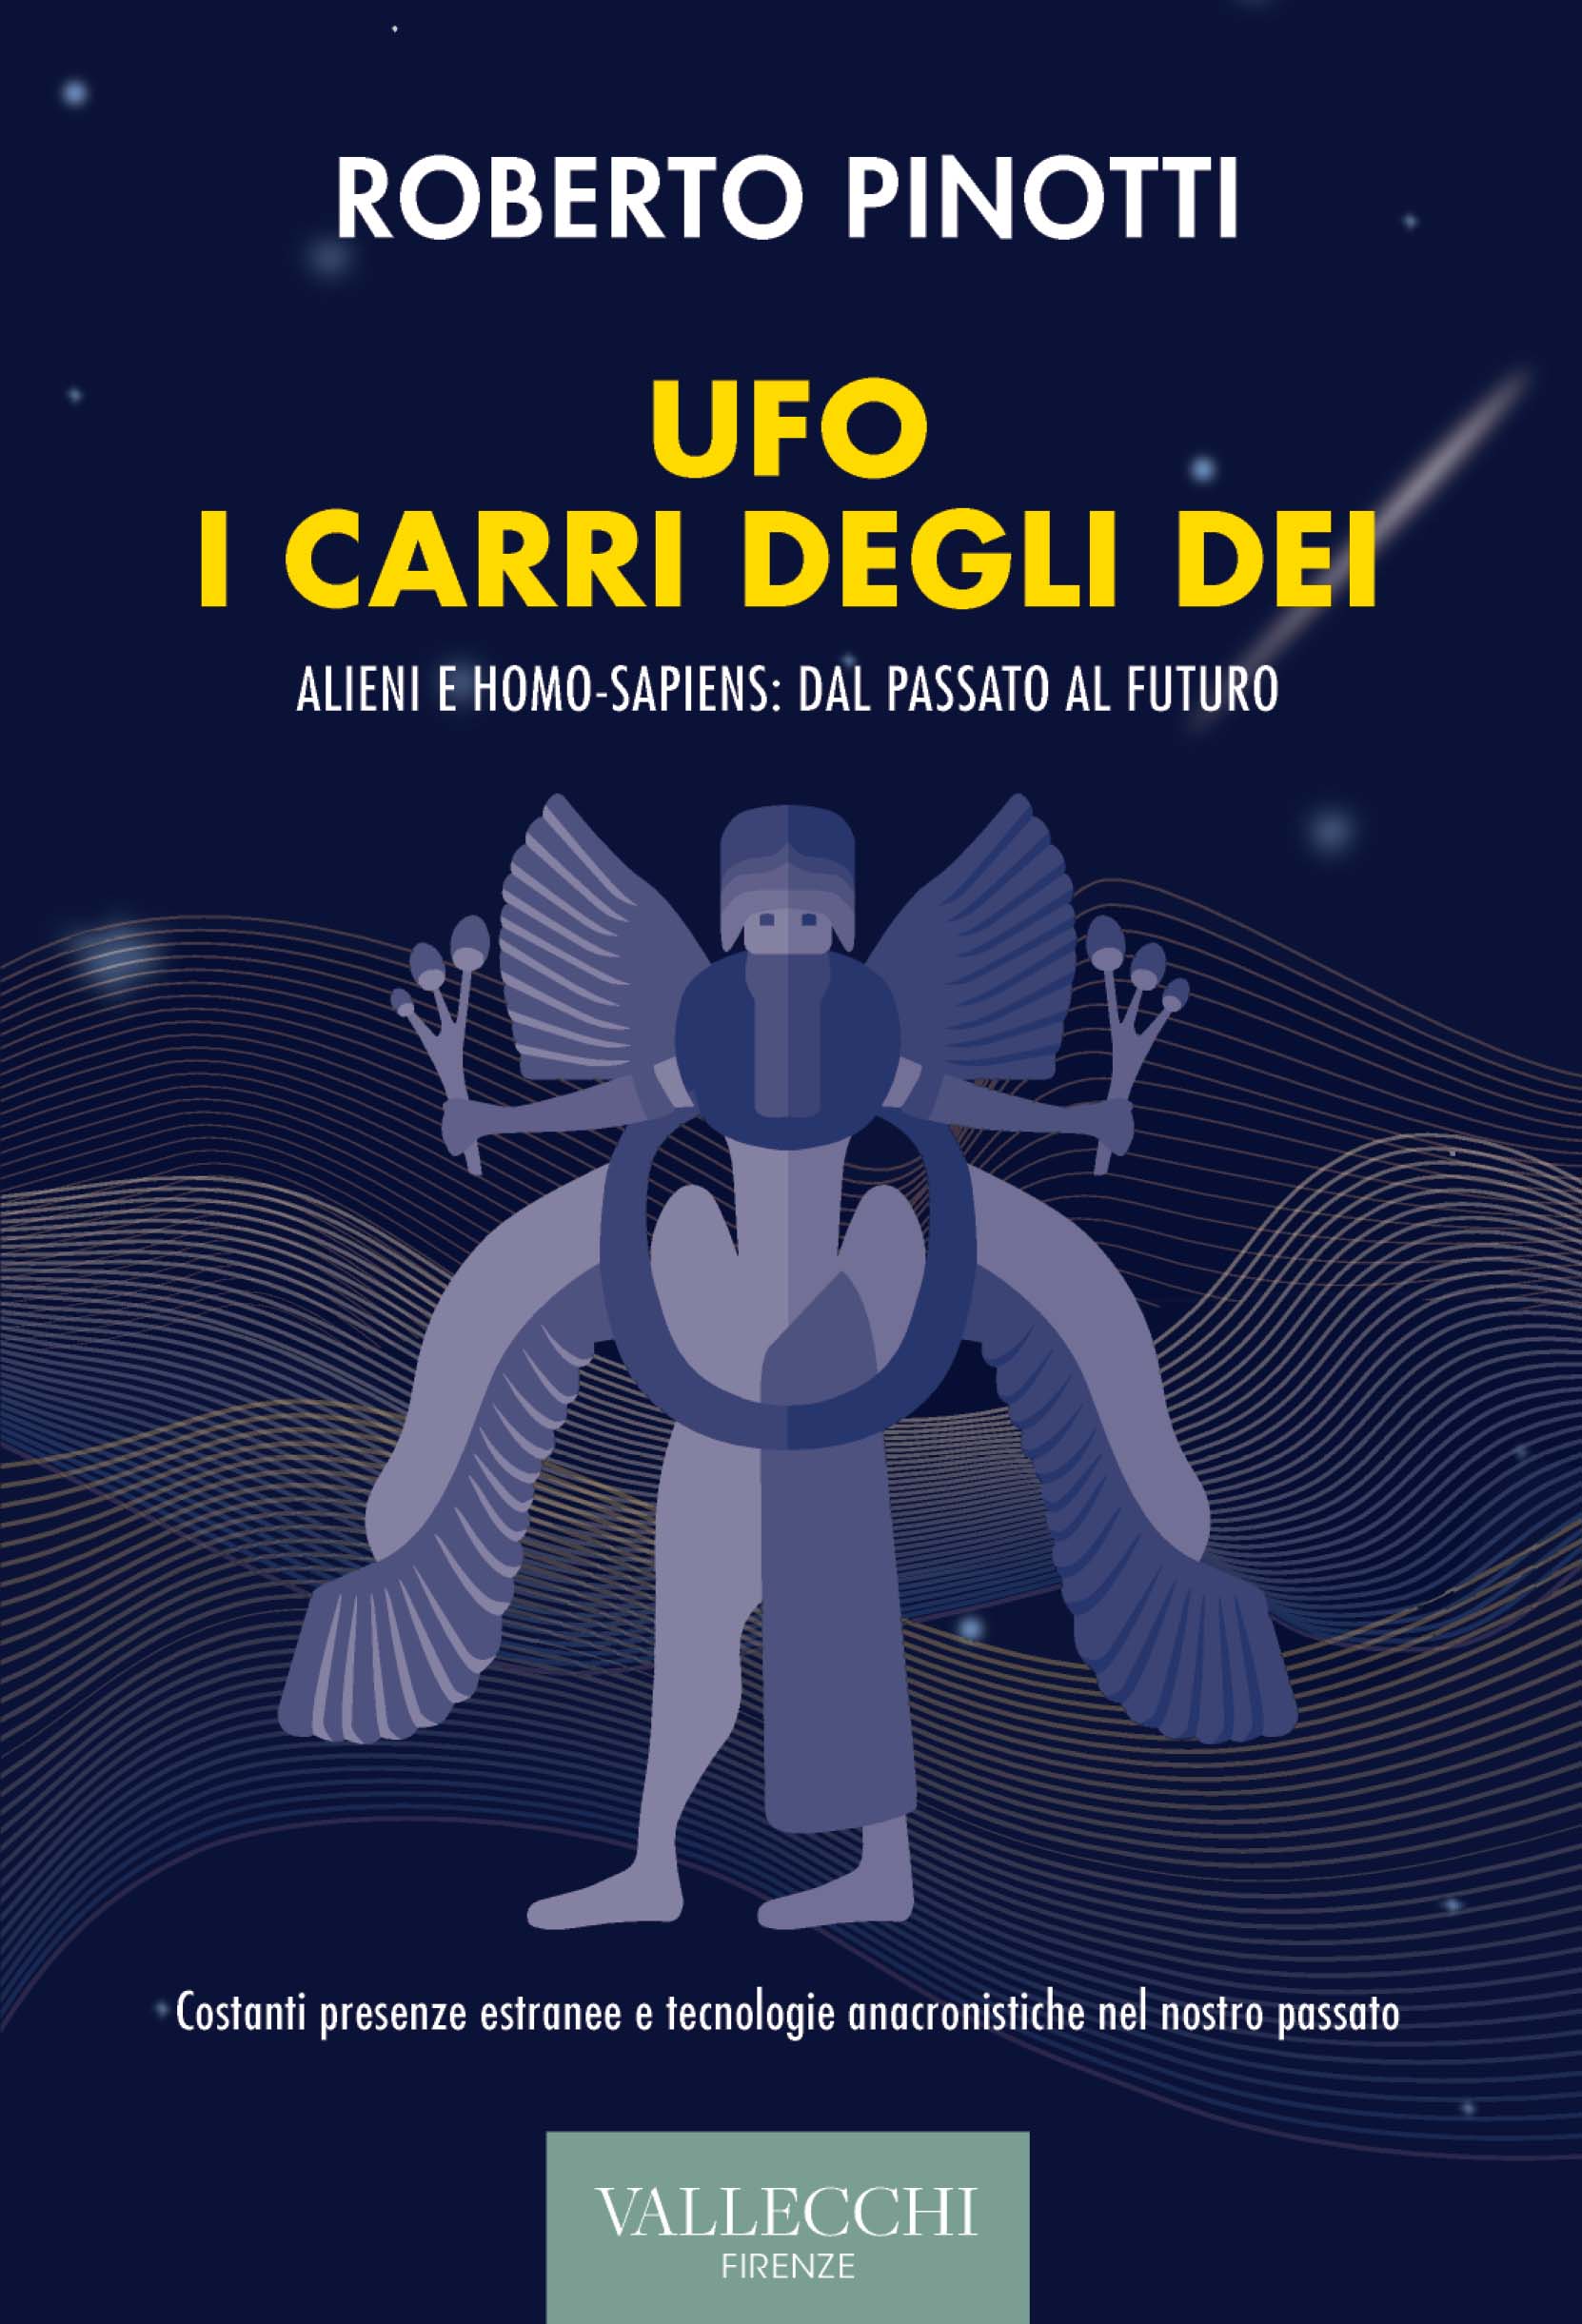 UFO – I CARRI DEGLI DEI